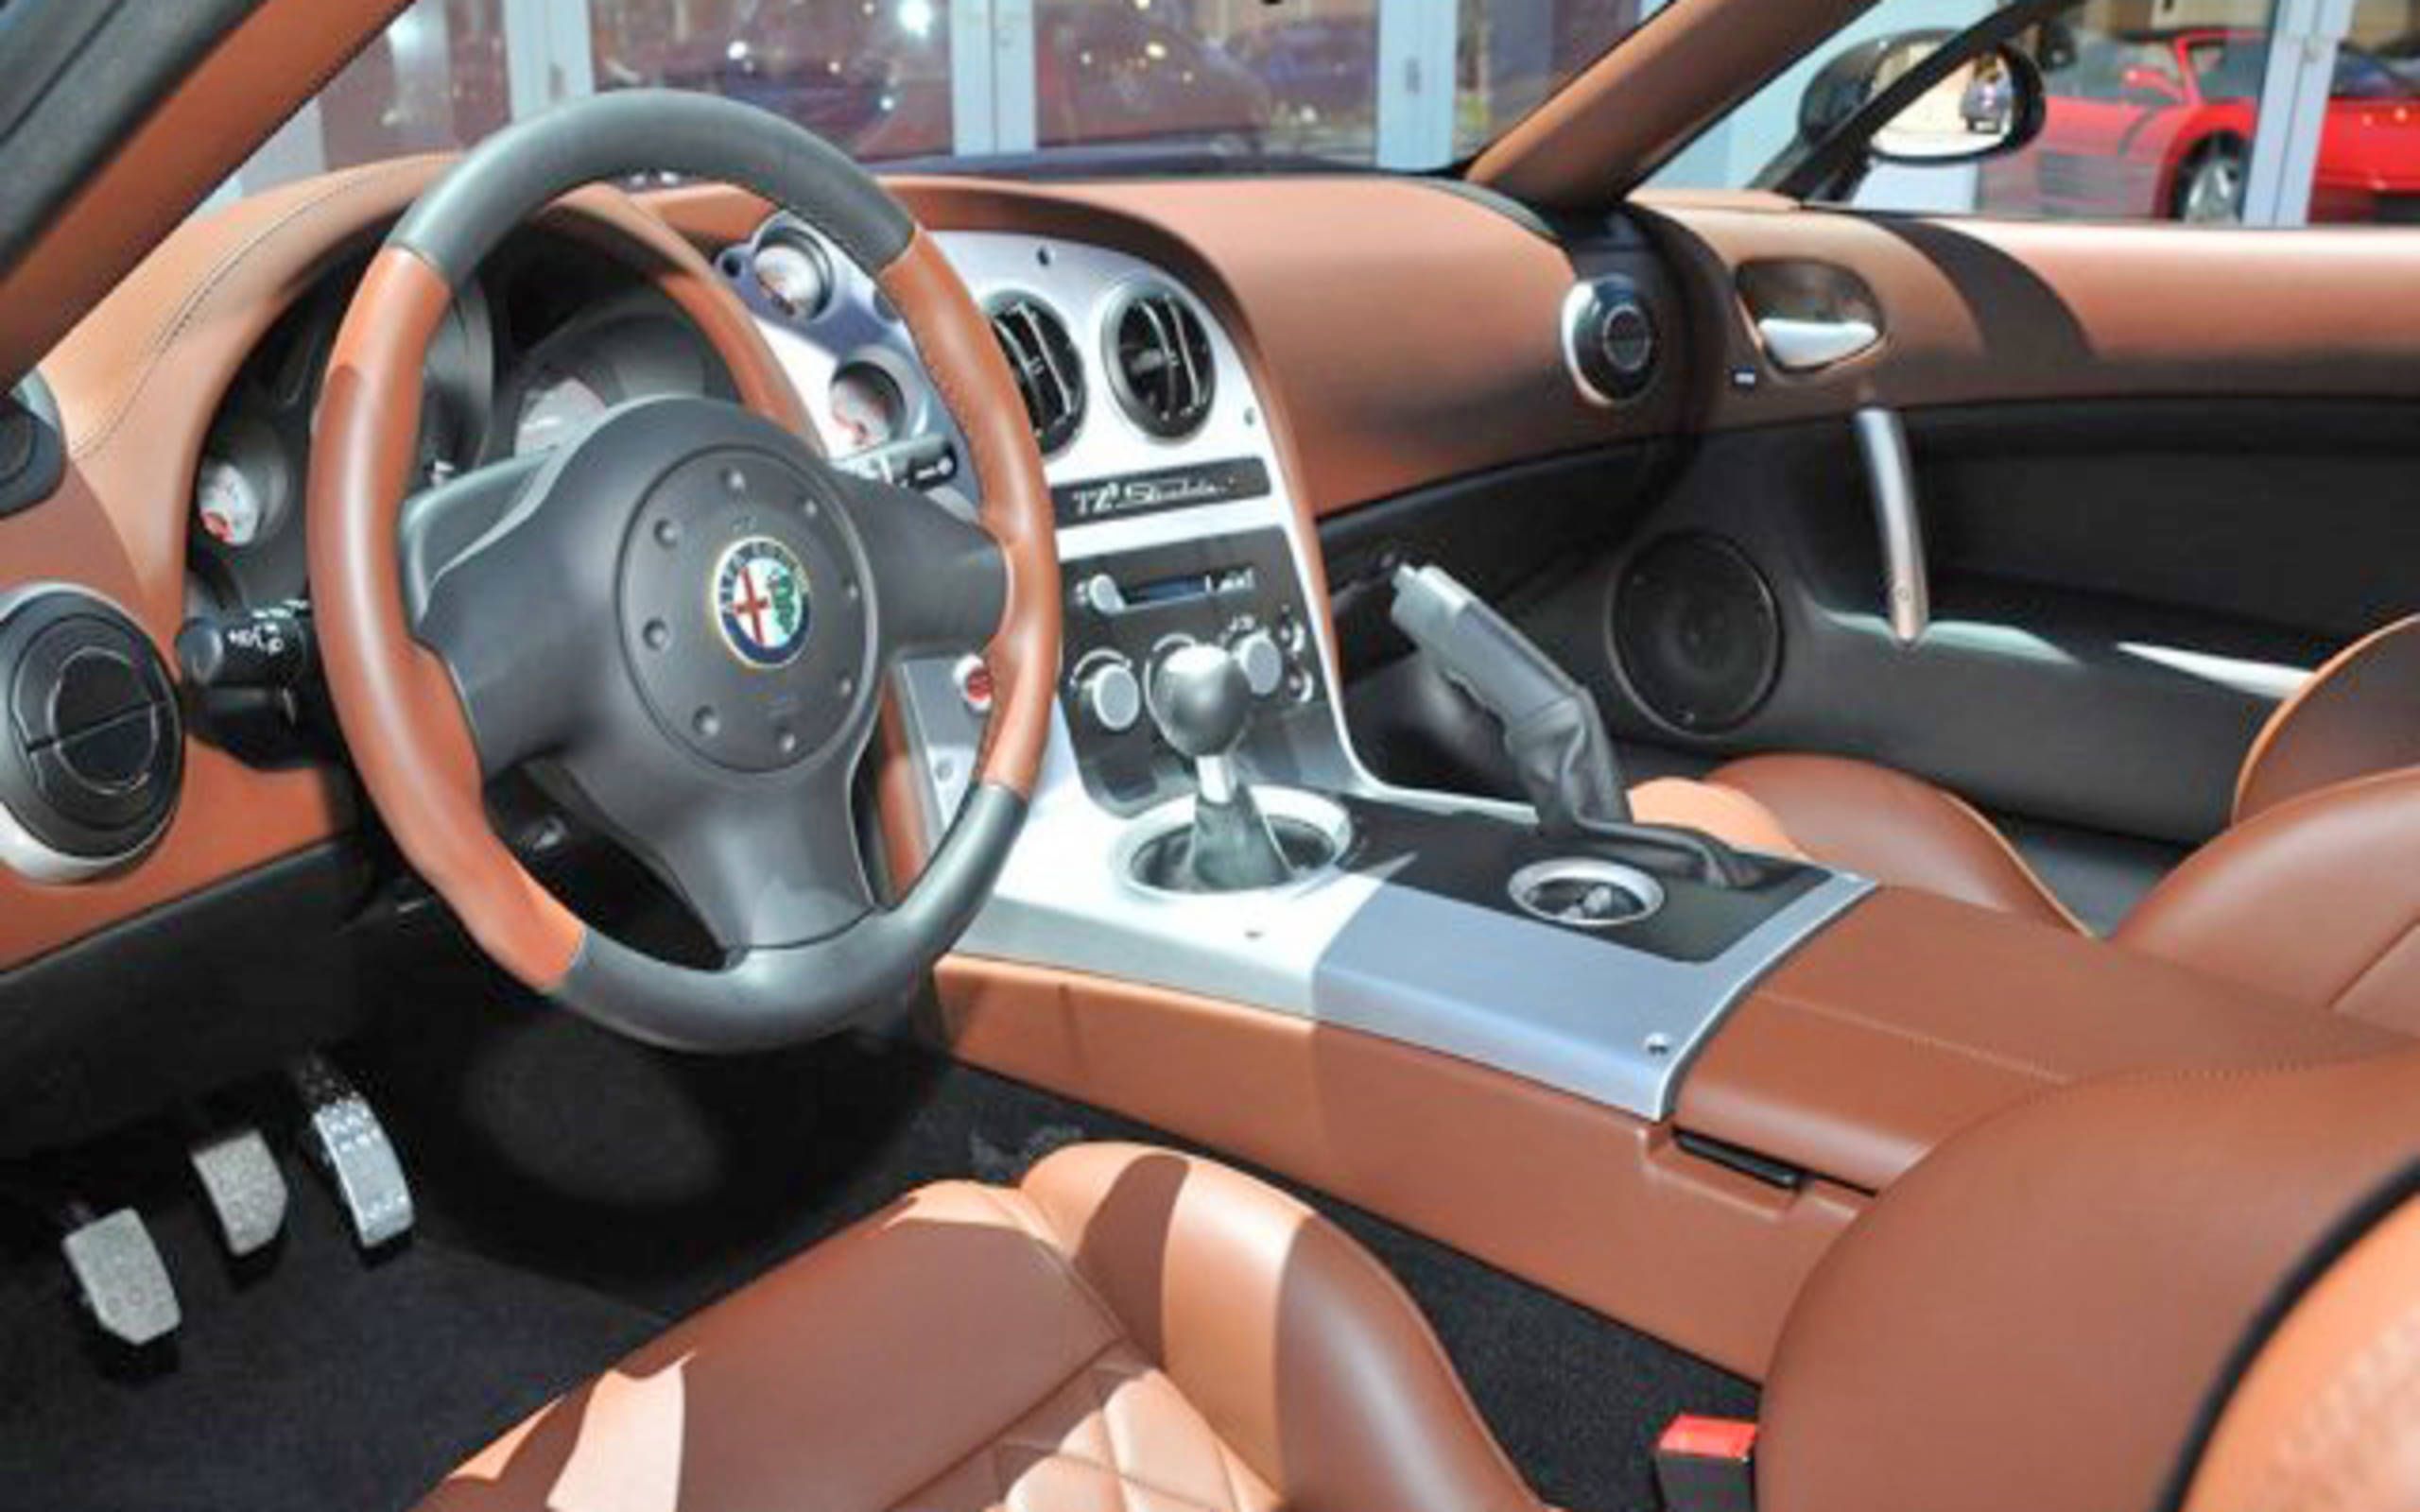 2010 Alfa Romeo TZ3 Zagato